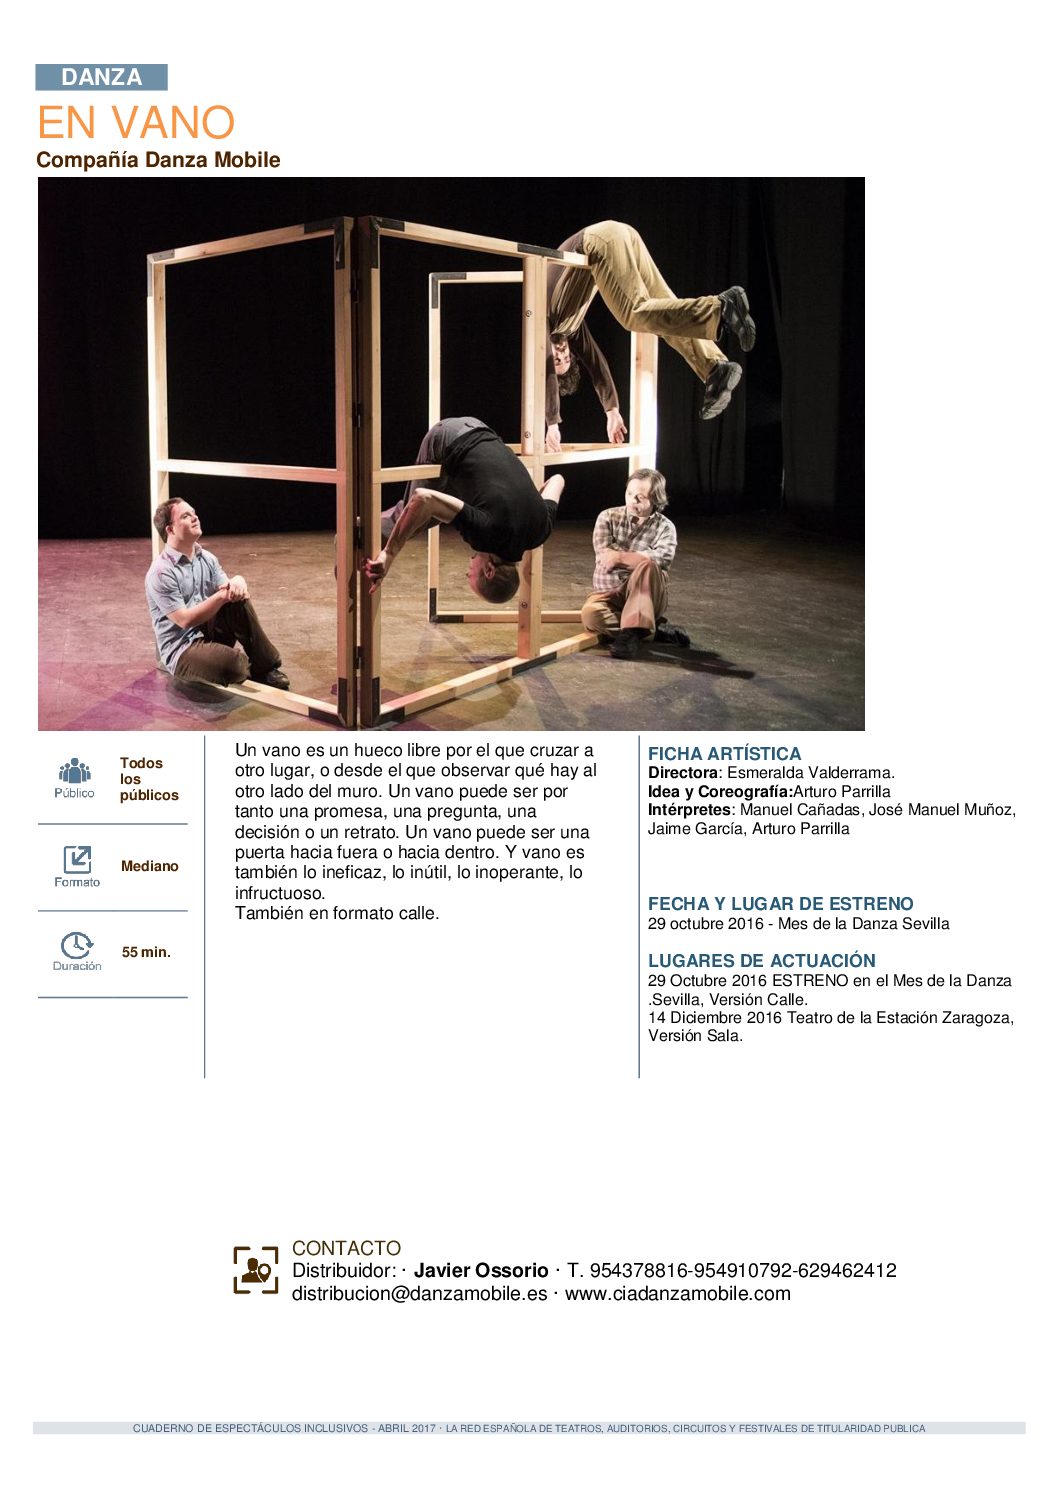 La Red Española de Teatros incluye ‘En Vano’ en su primer cuaderno de espectáculos inclusivos